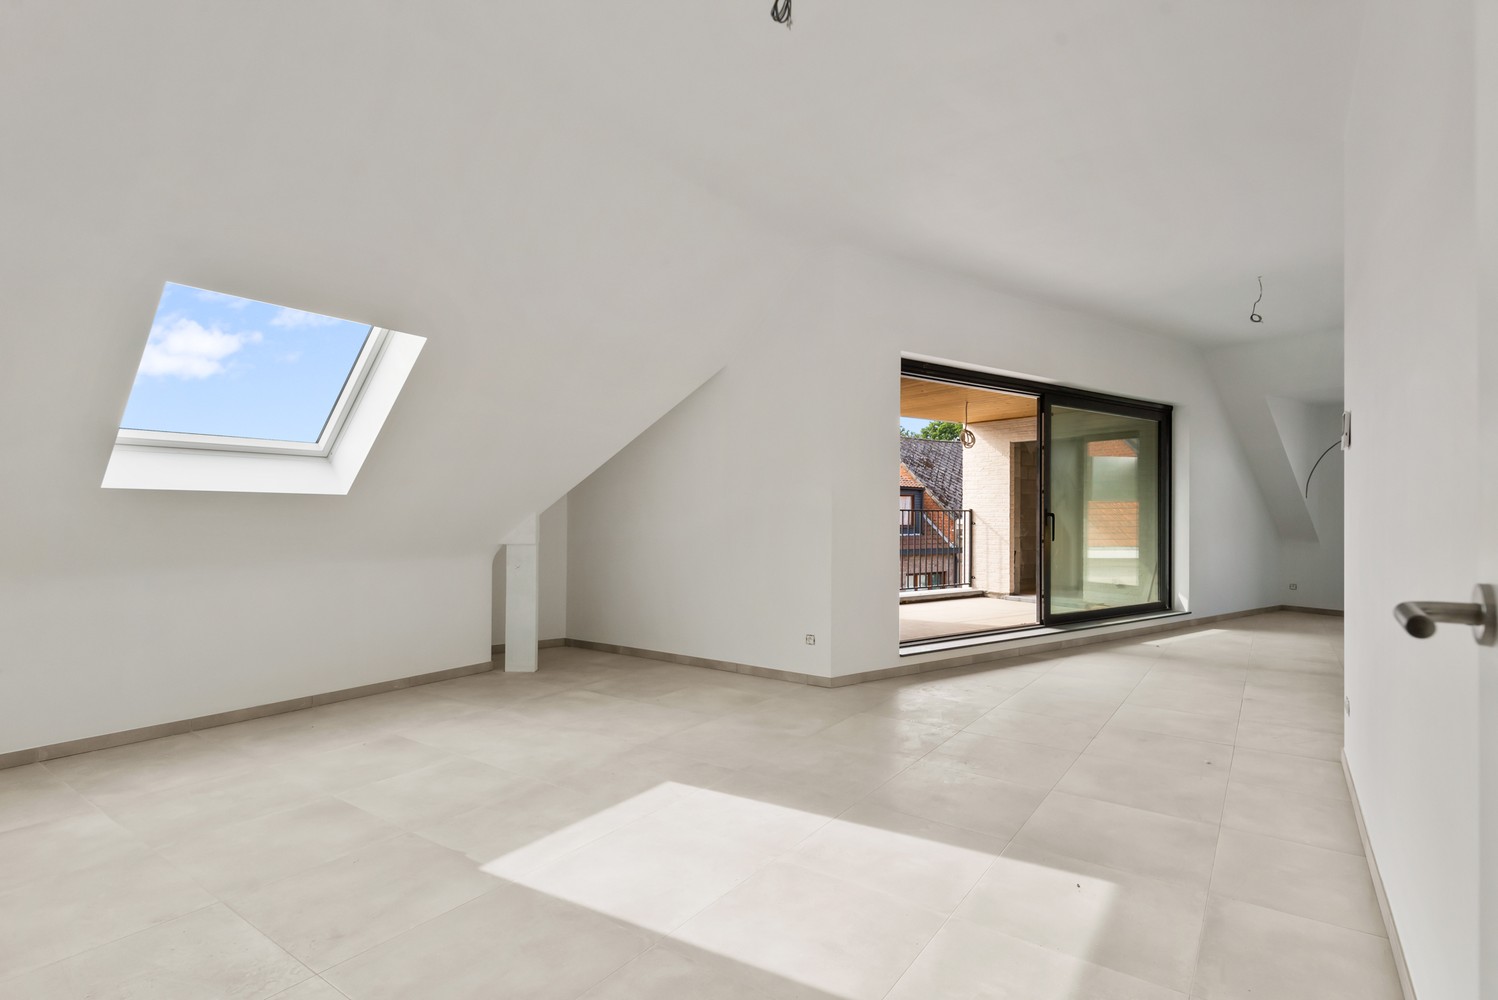 Licht en functioneel appartement (+/-121,10m²) met 2 slaapkamers en een zuidgeoriënteerd terras (+/-10,3m²)! afbeelding 5